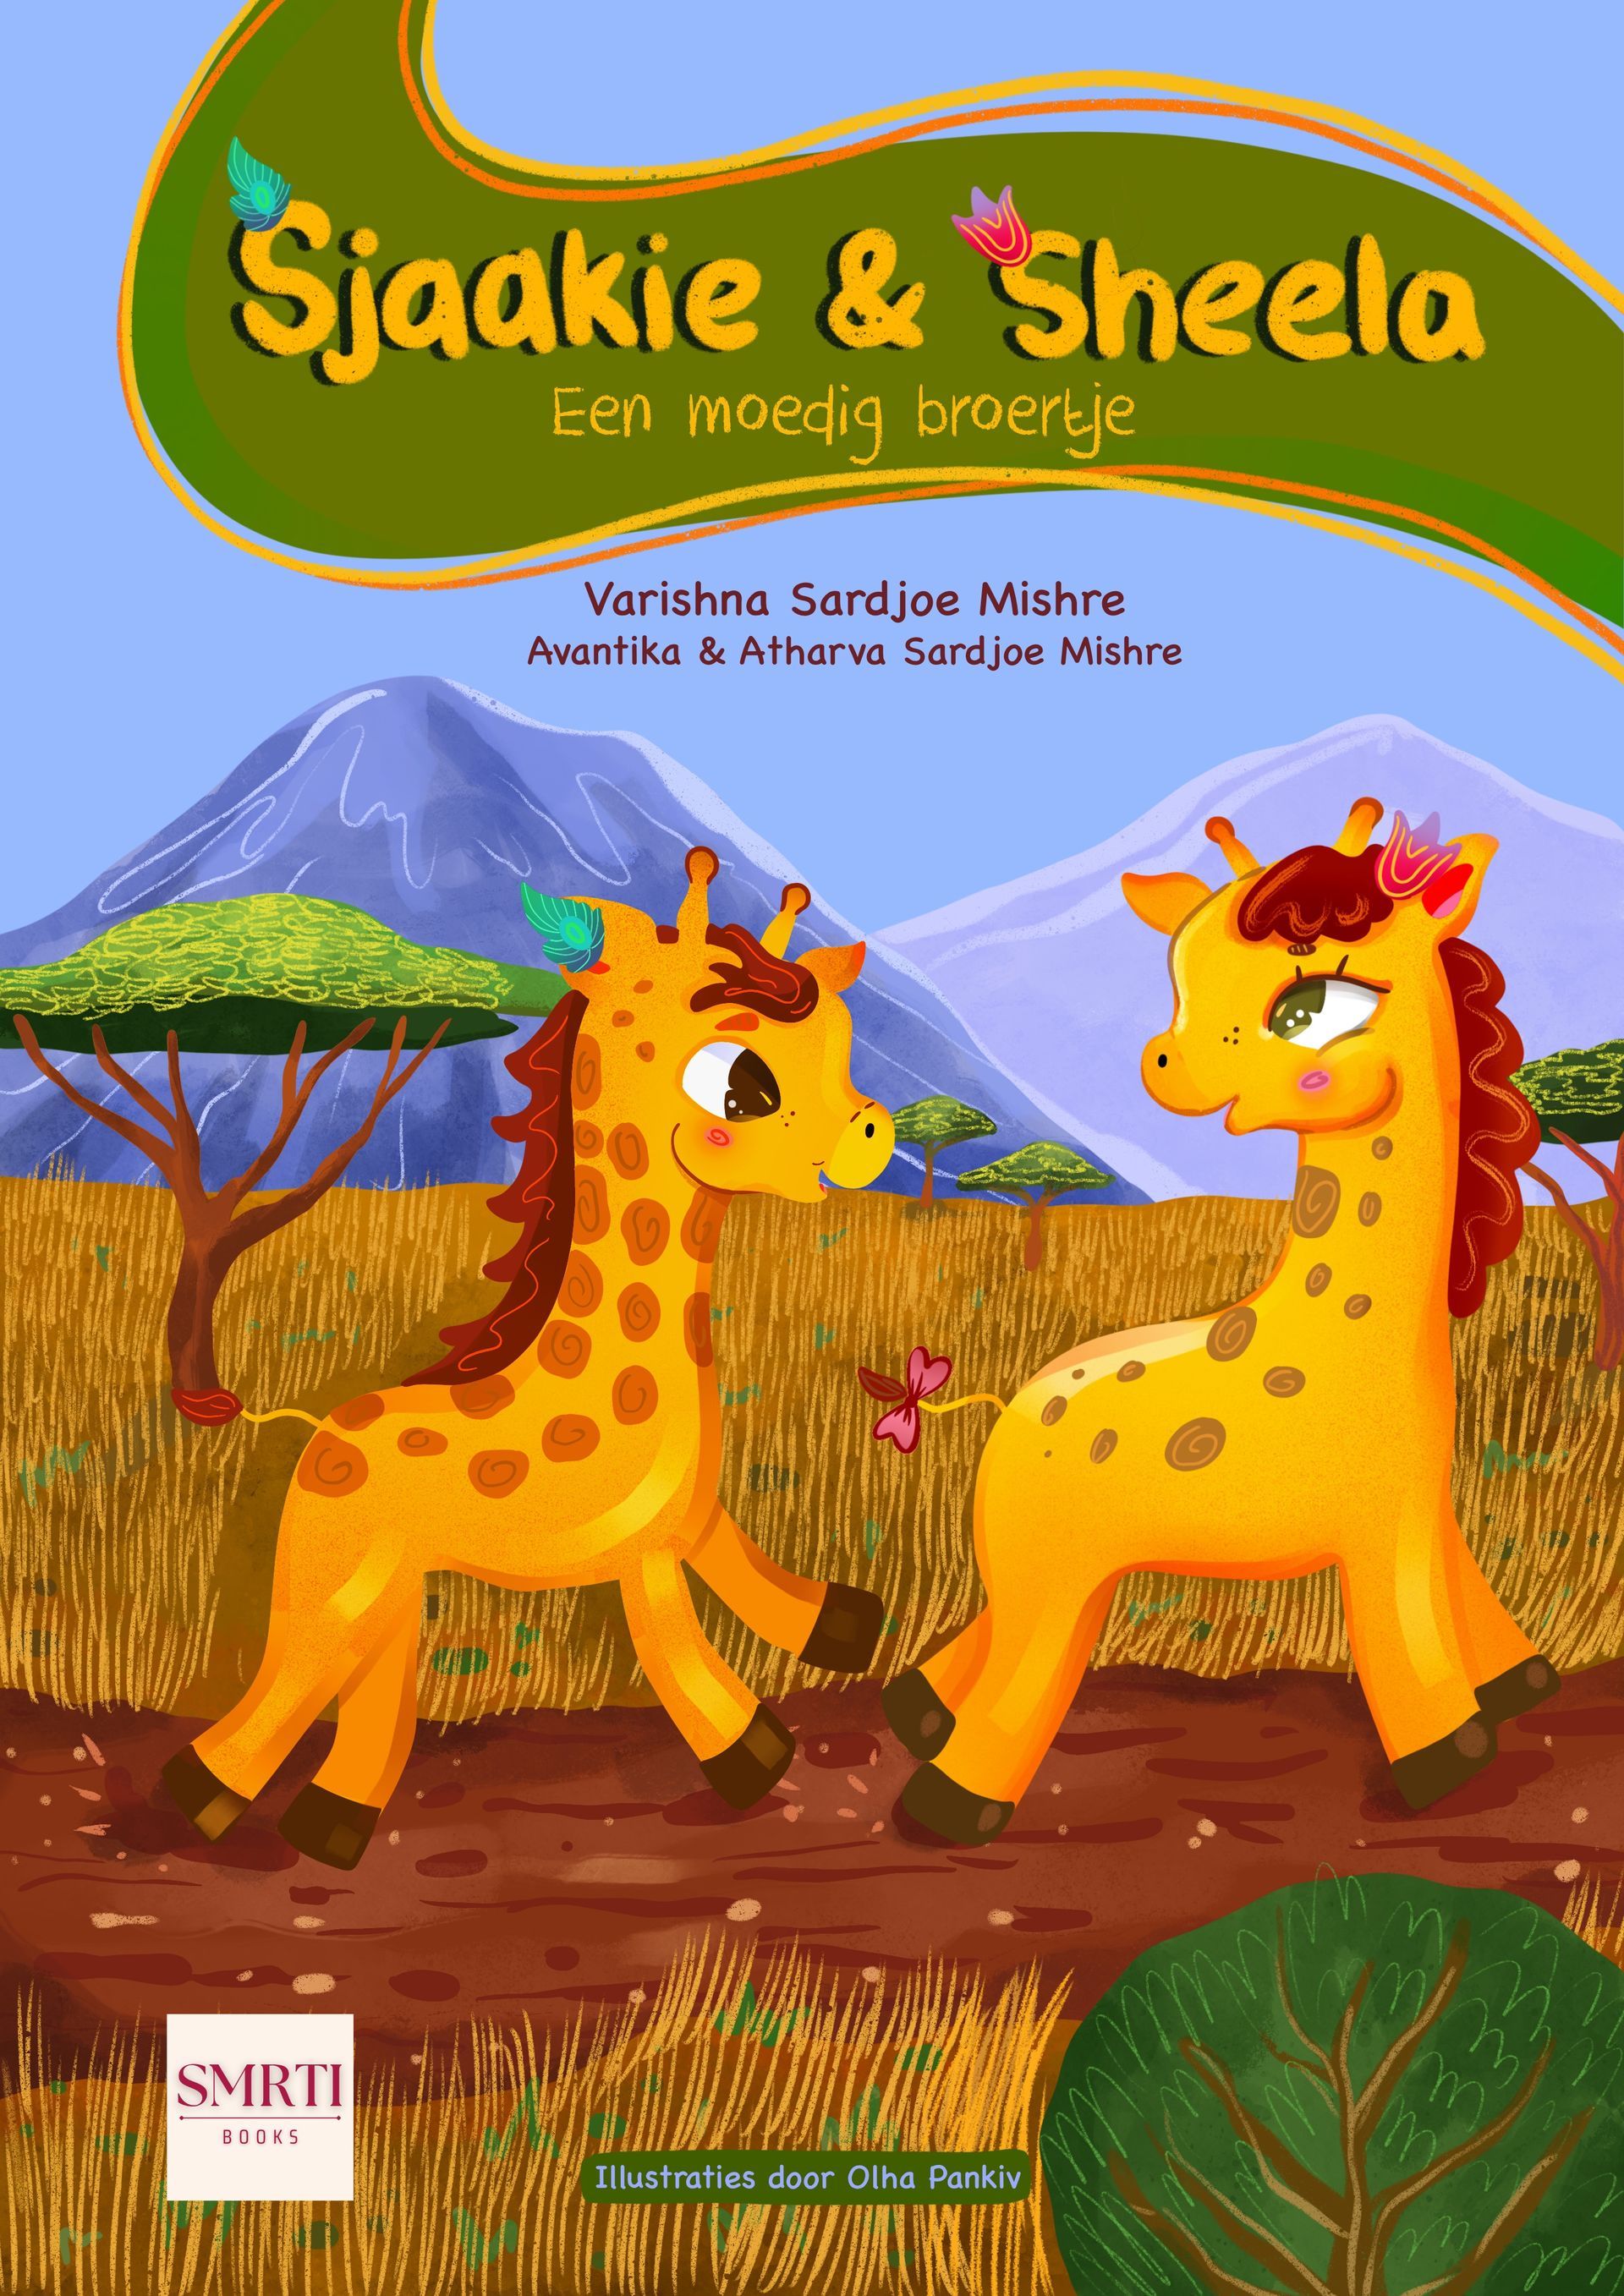 Varishna, SMRTI Books, Sjaakie en Sheela, Giraffen, kinderboeken, kleurboek, dierenbescherming, natuurbescherming